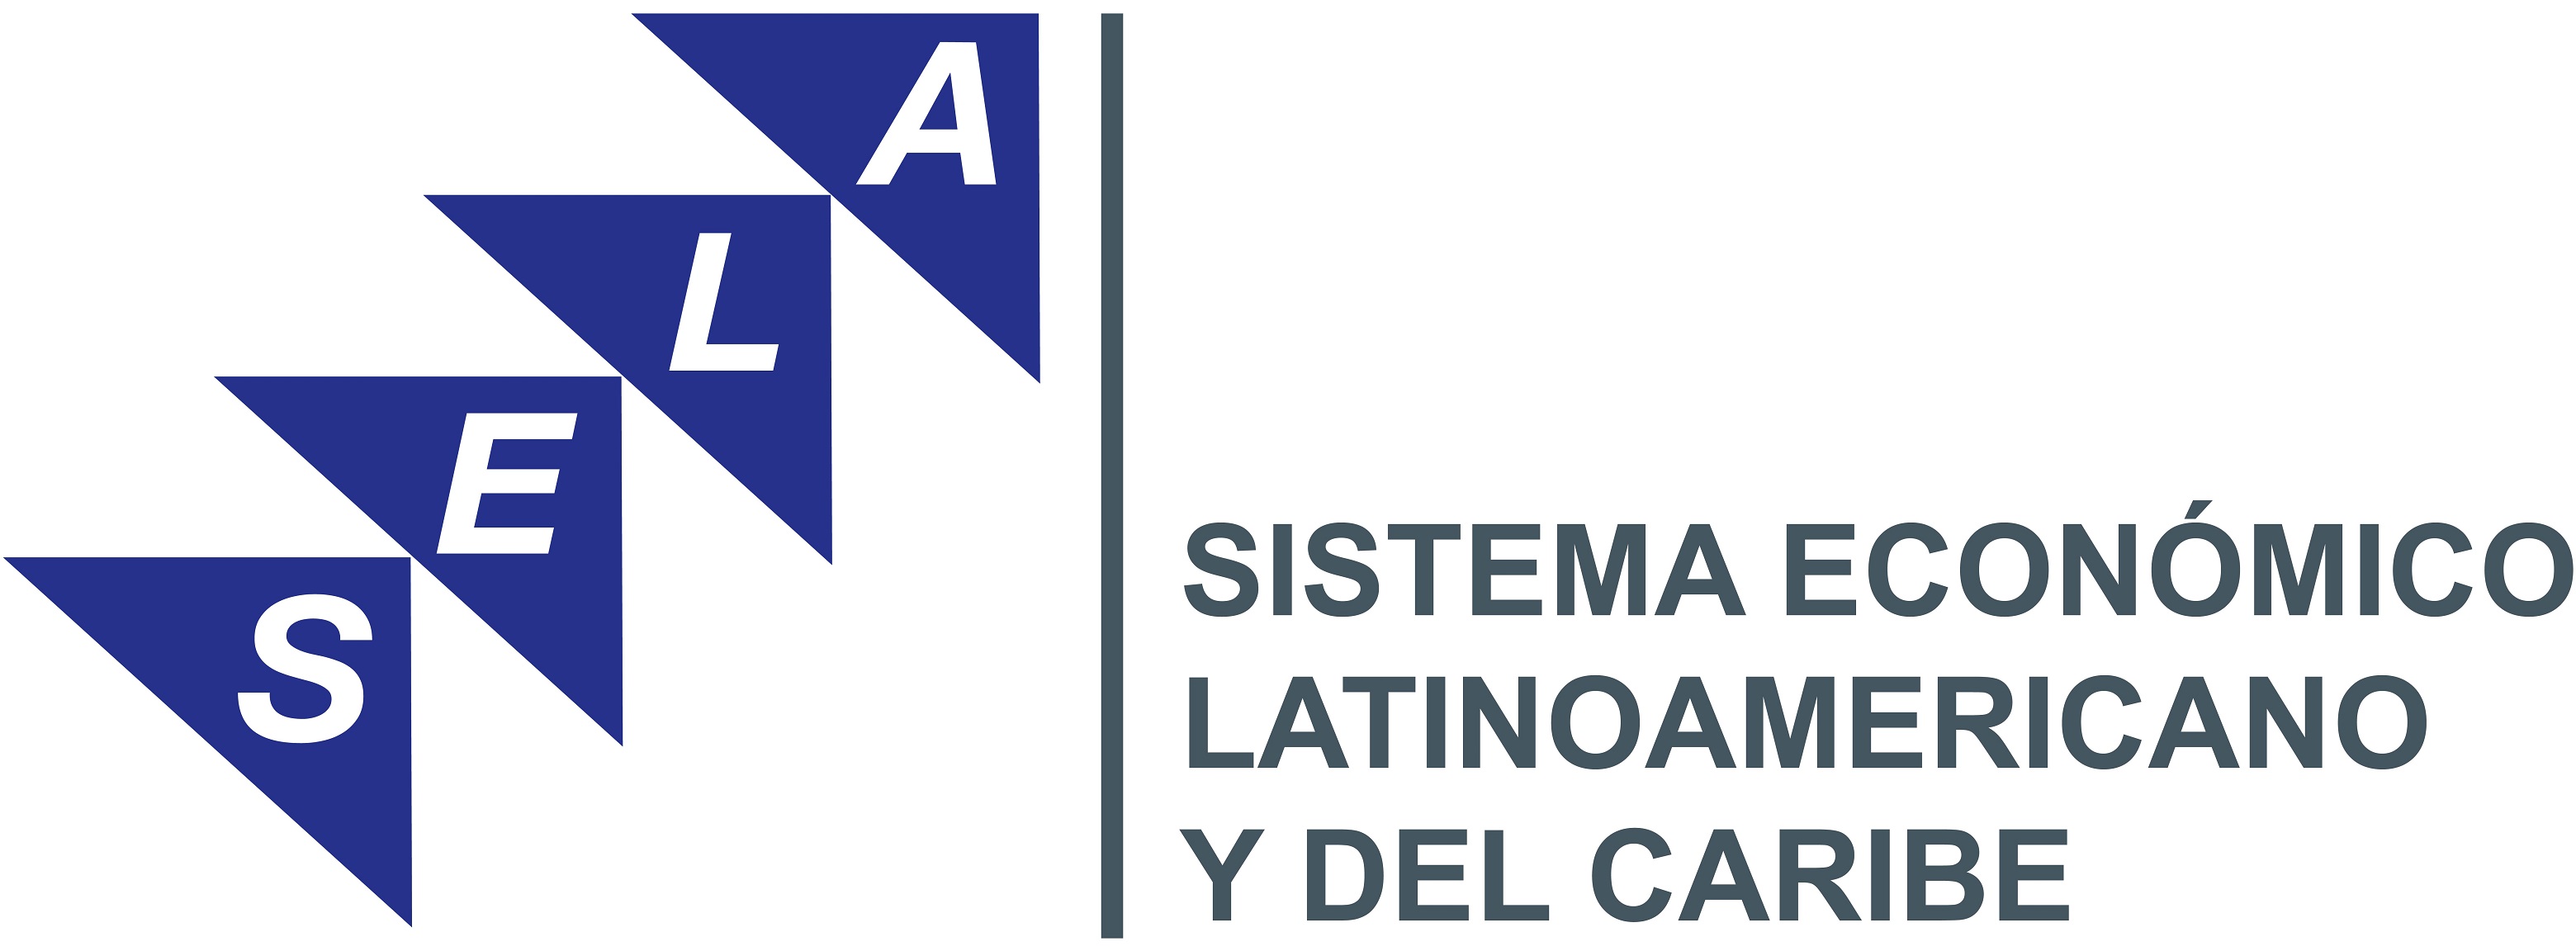 Sistema Económico Latinoamericano y del Caribe (SELA)